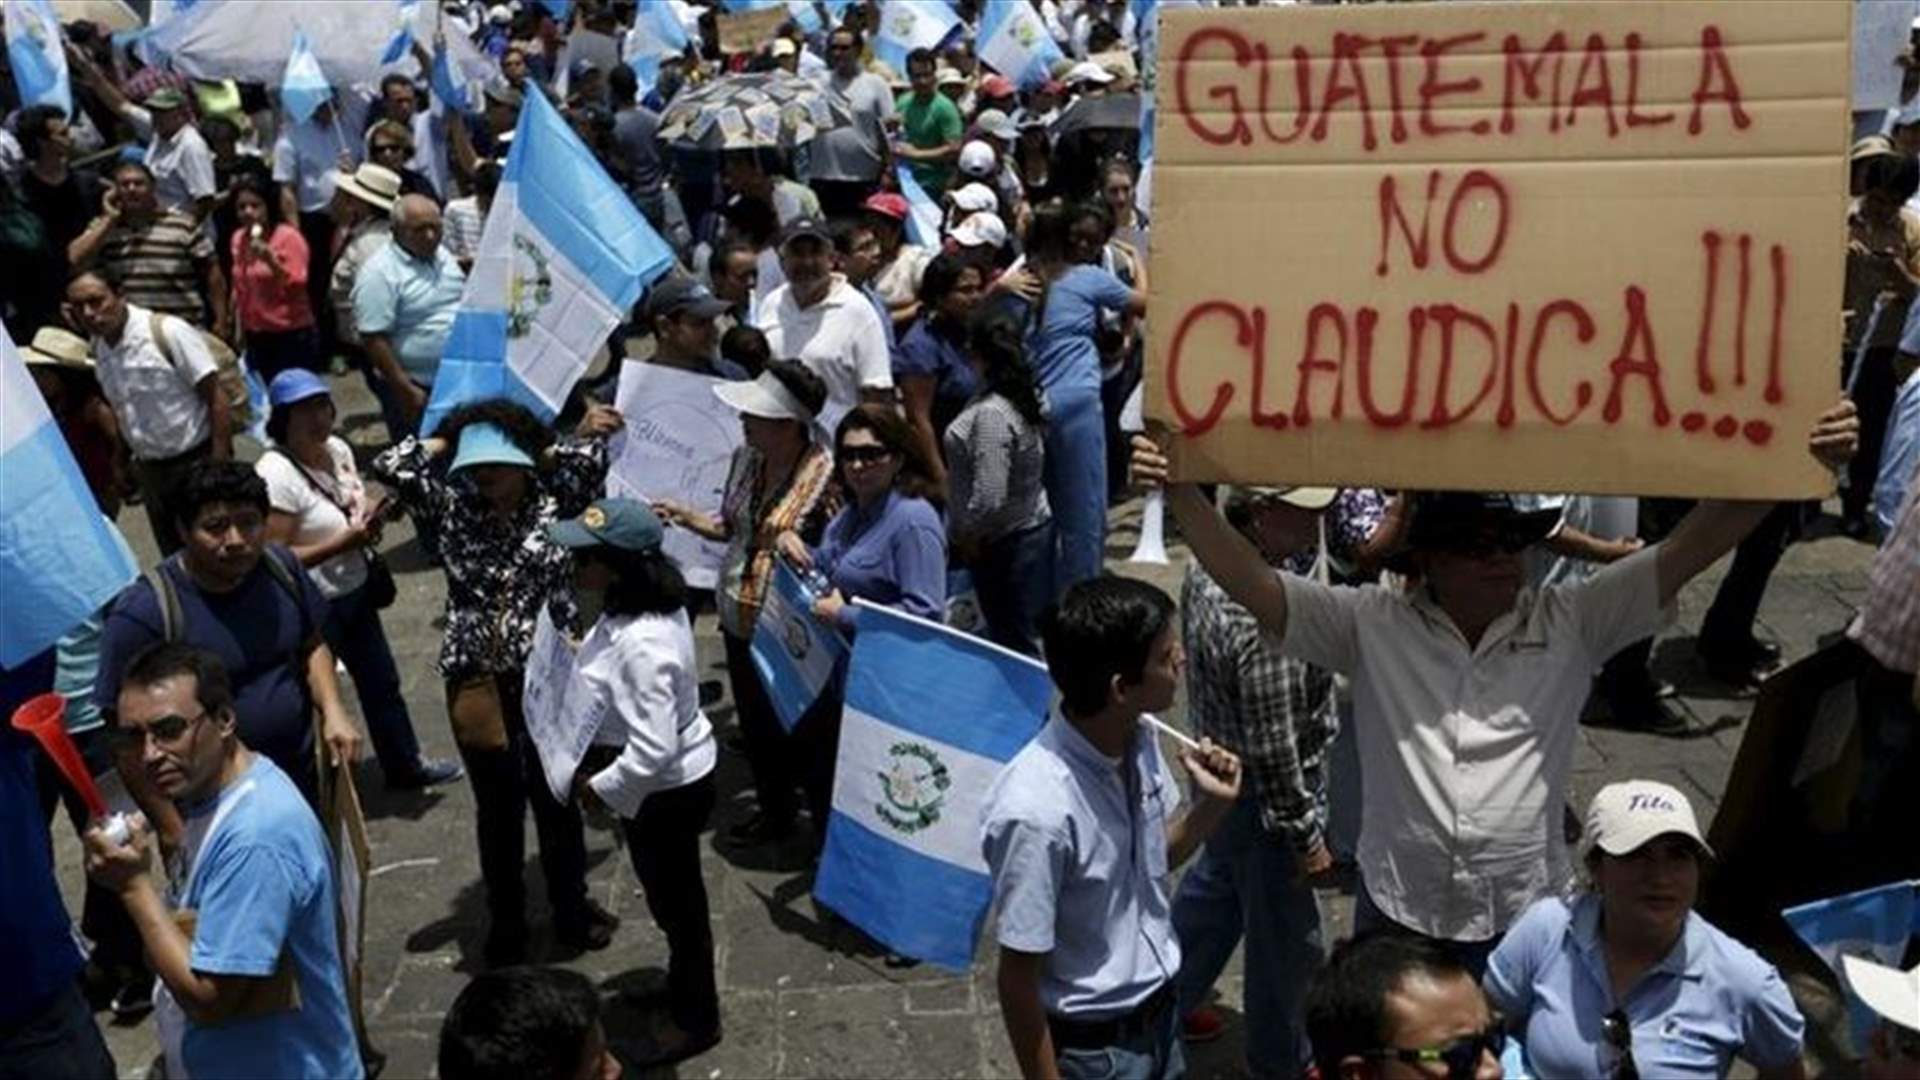 تظاهرات في غواتيمالا تضغط على رئيسها للإستقالة 